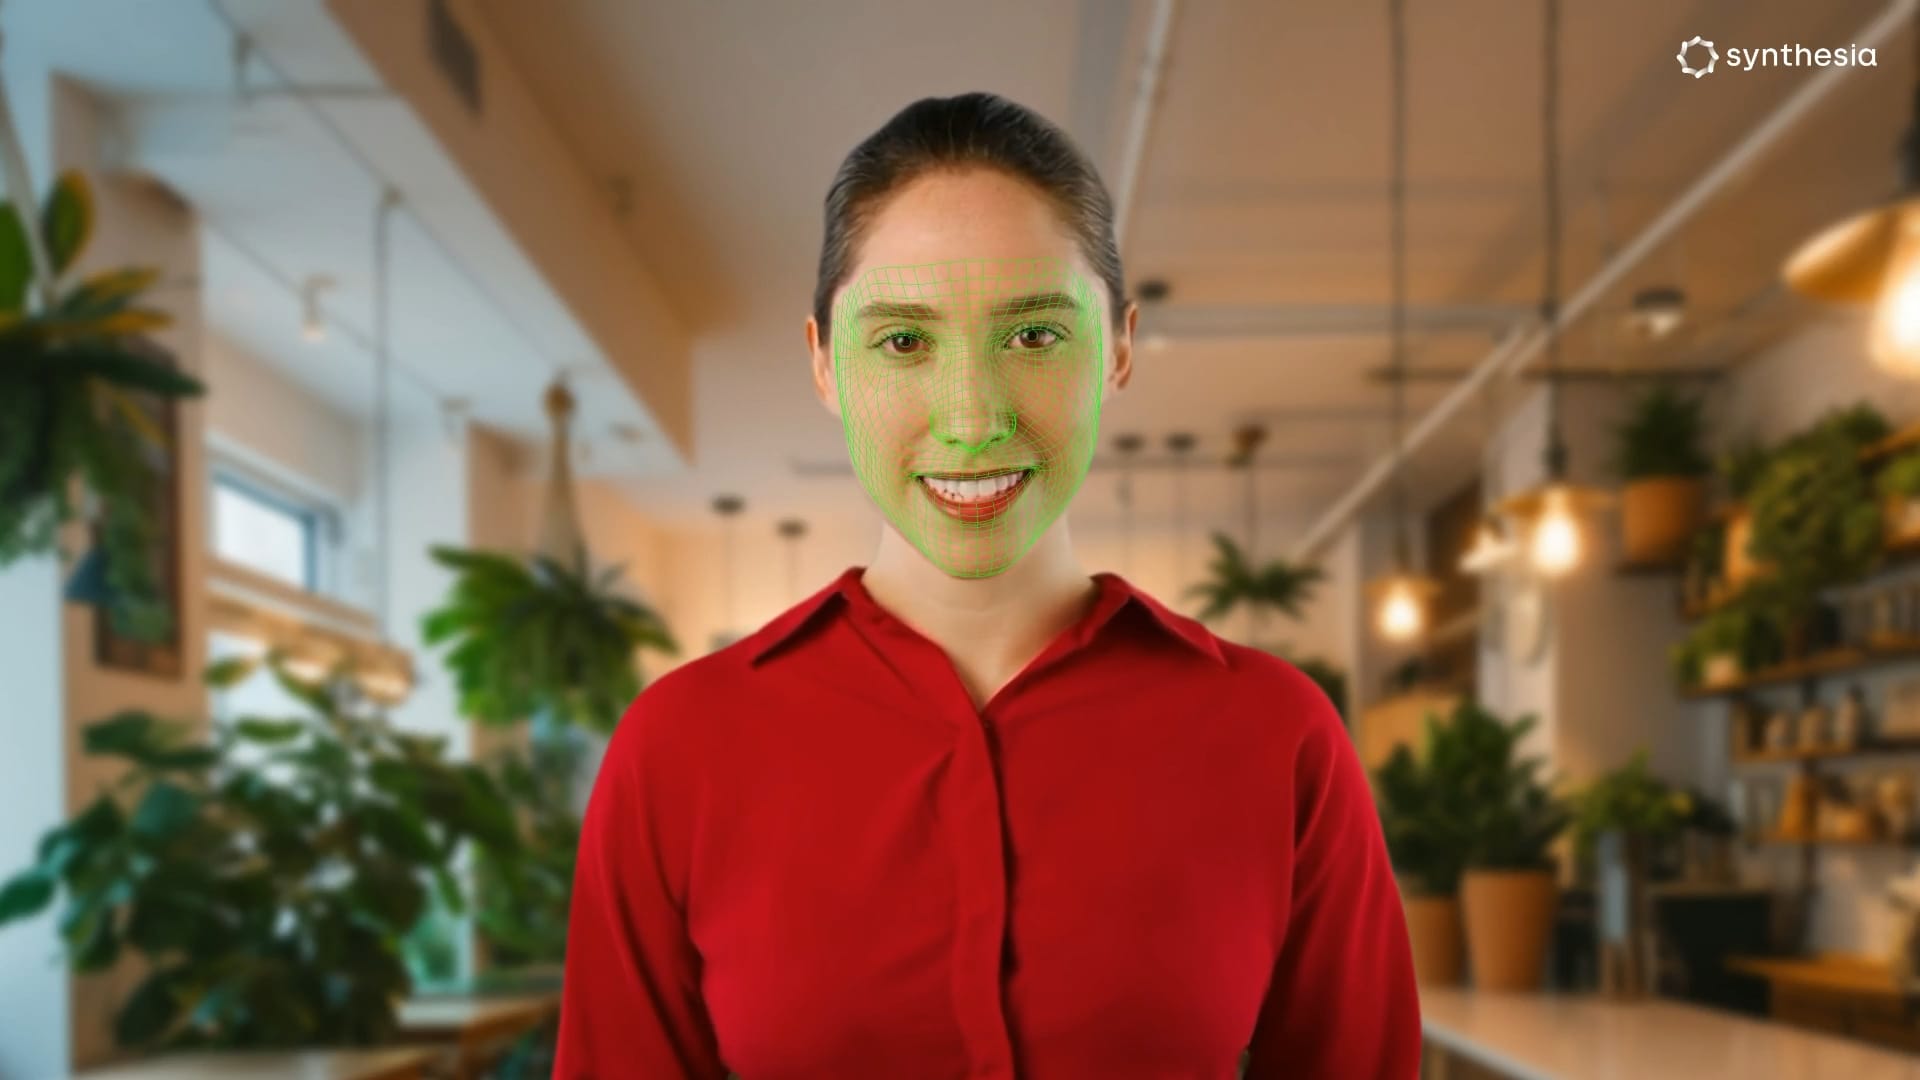 La startup Synthesia, respaldada por Nvidia, presenta avatares de IA que pueden transmitir emociones humanas